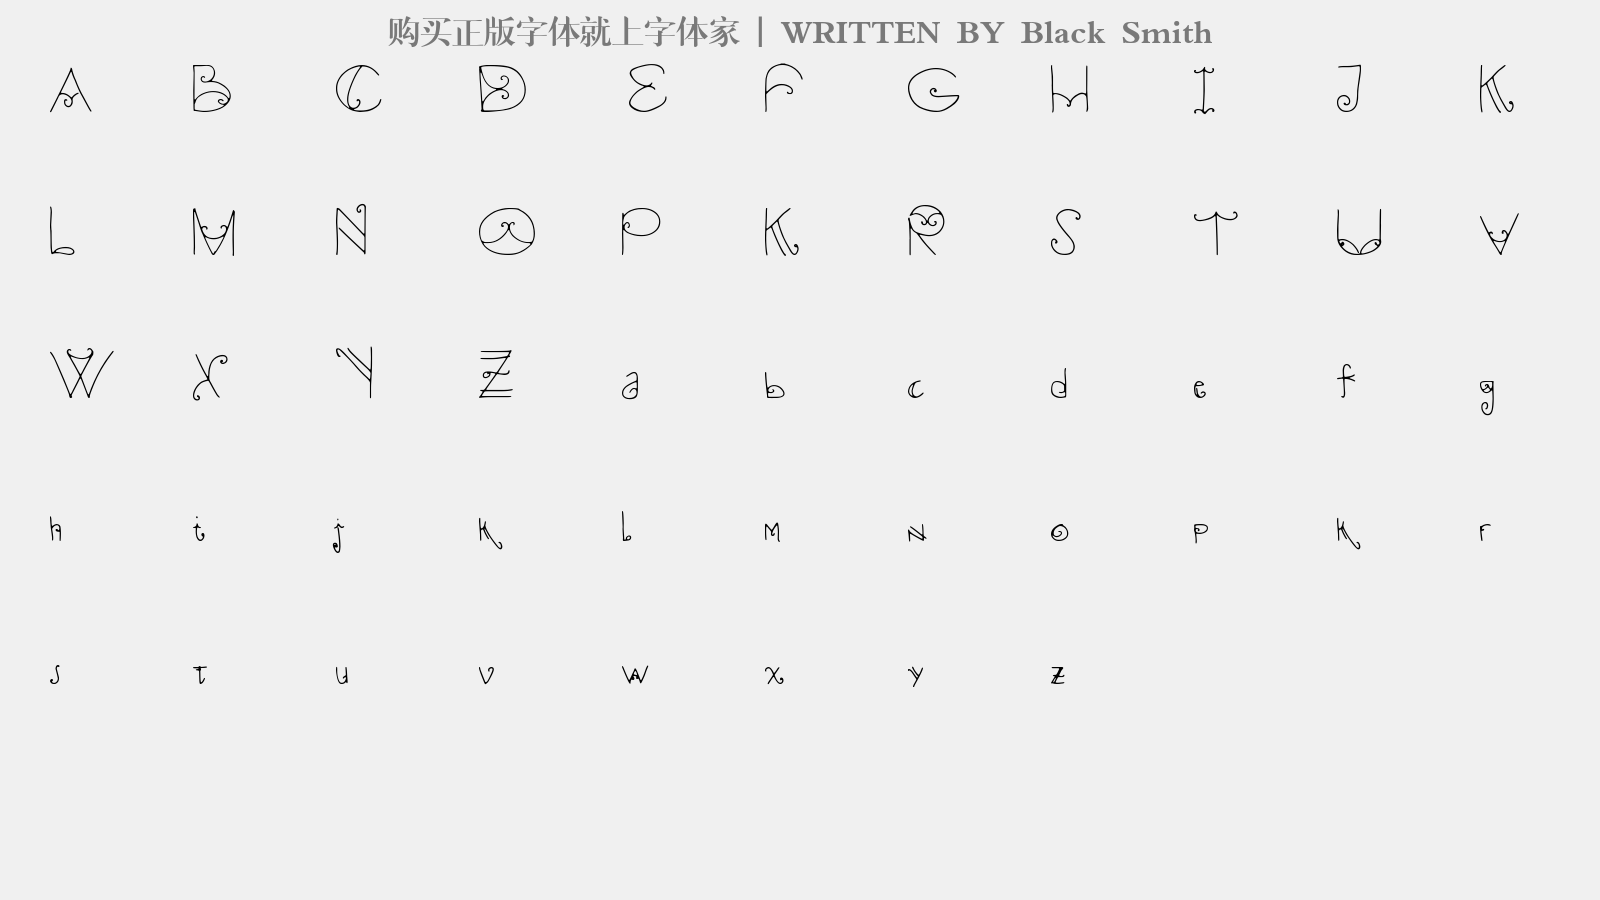 Black Smith - 大写字母/小写字母/数字